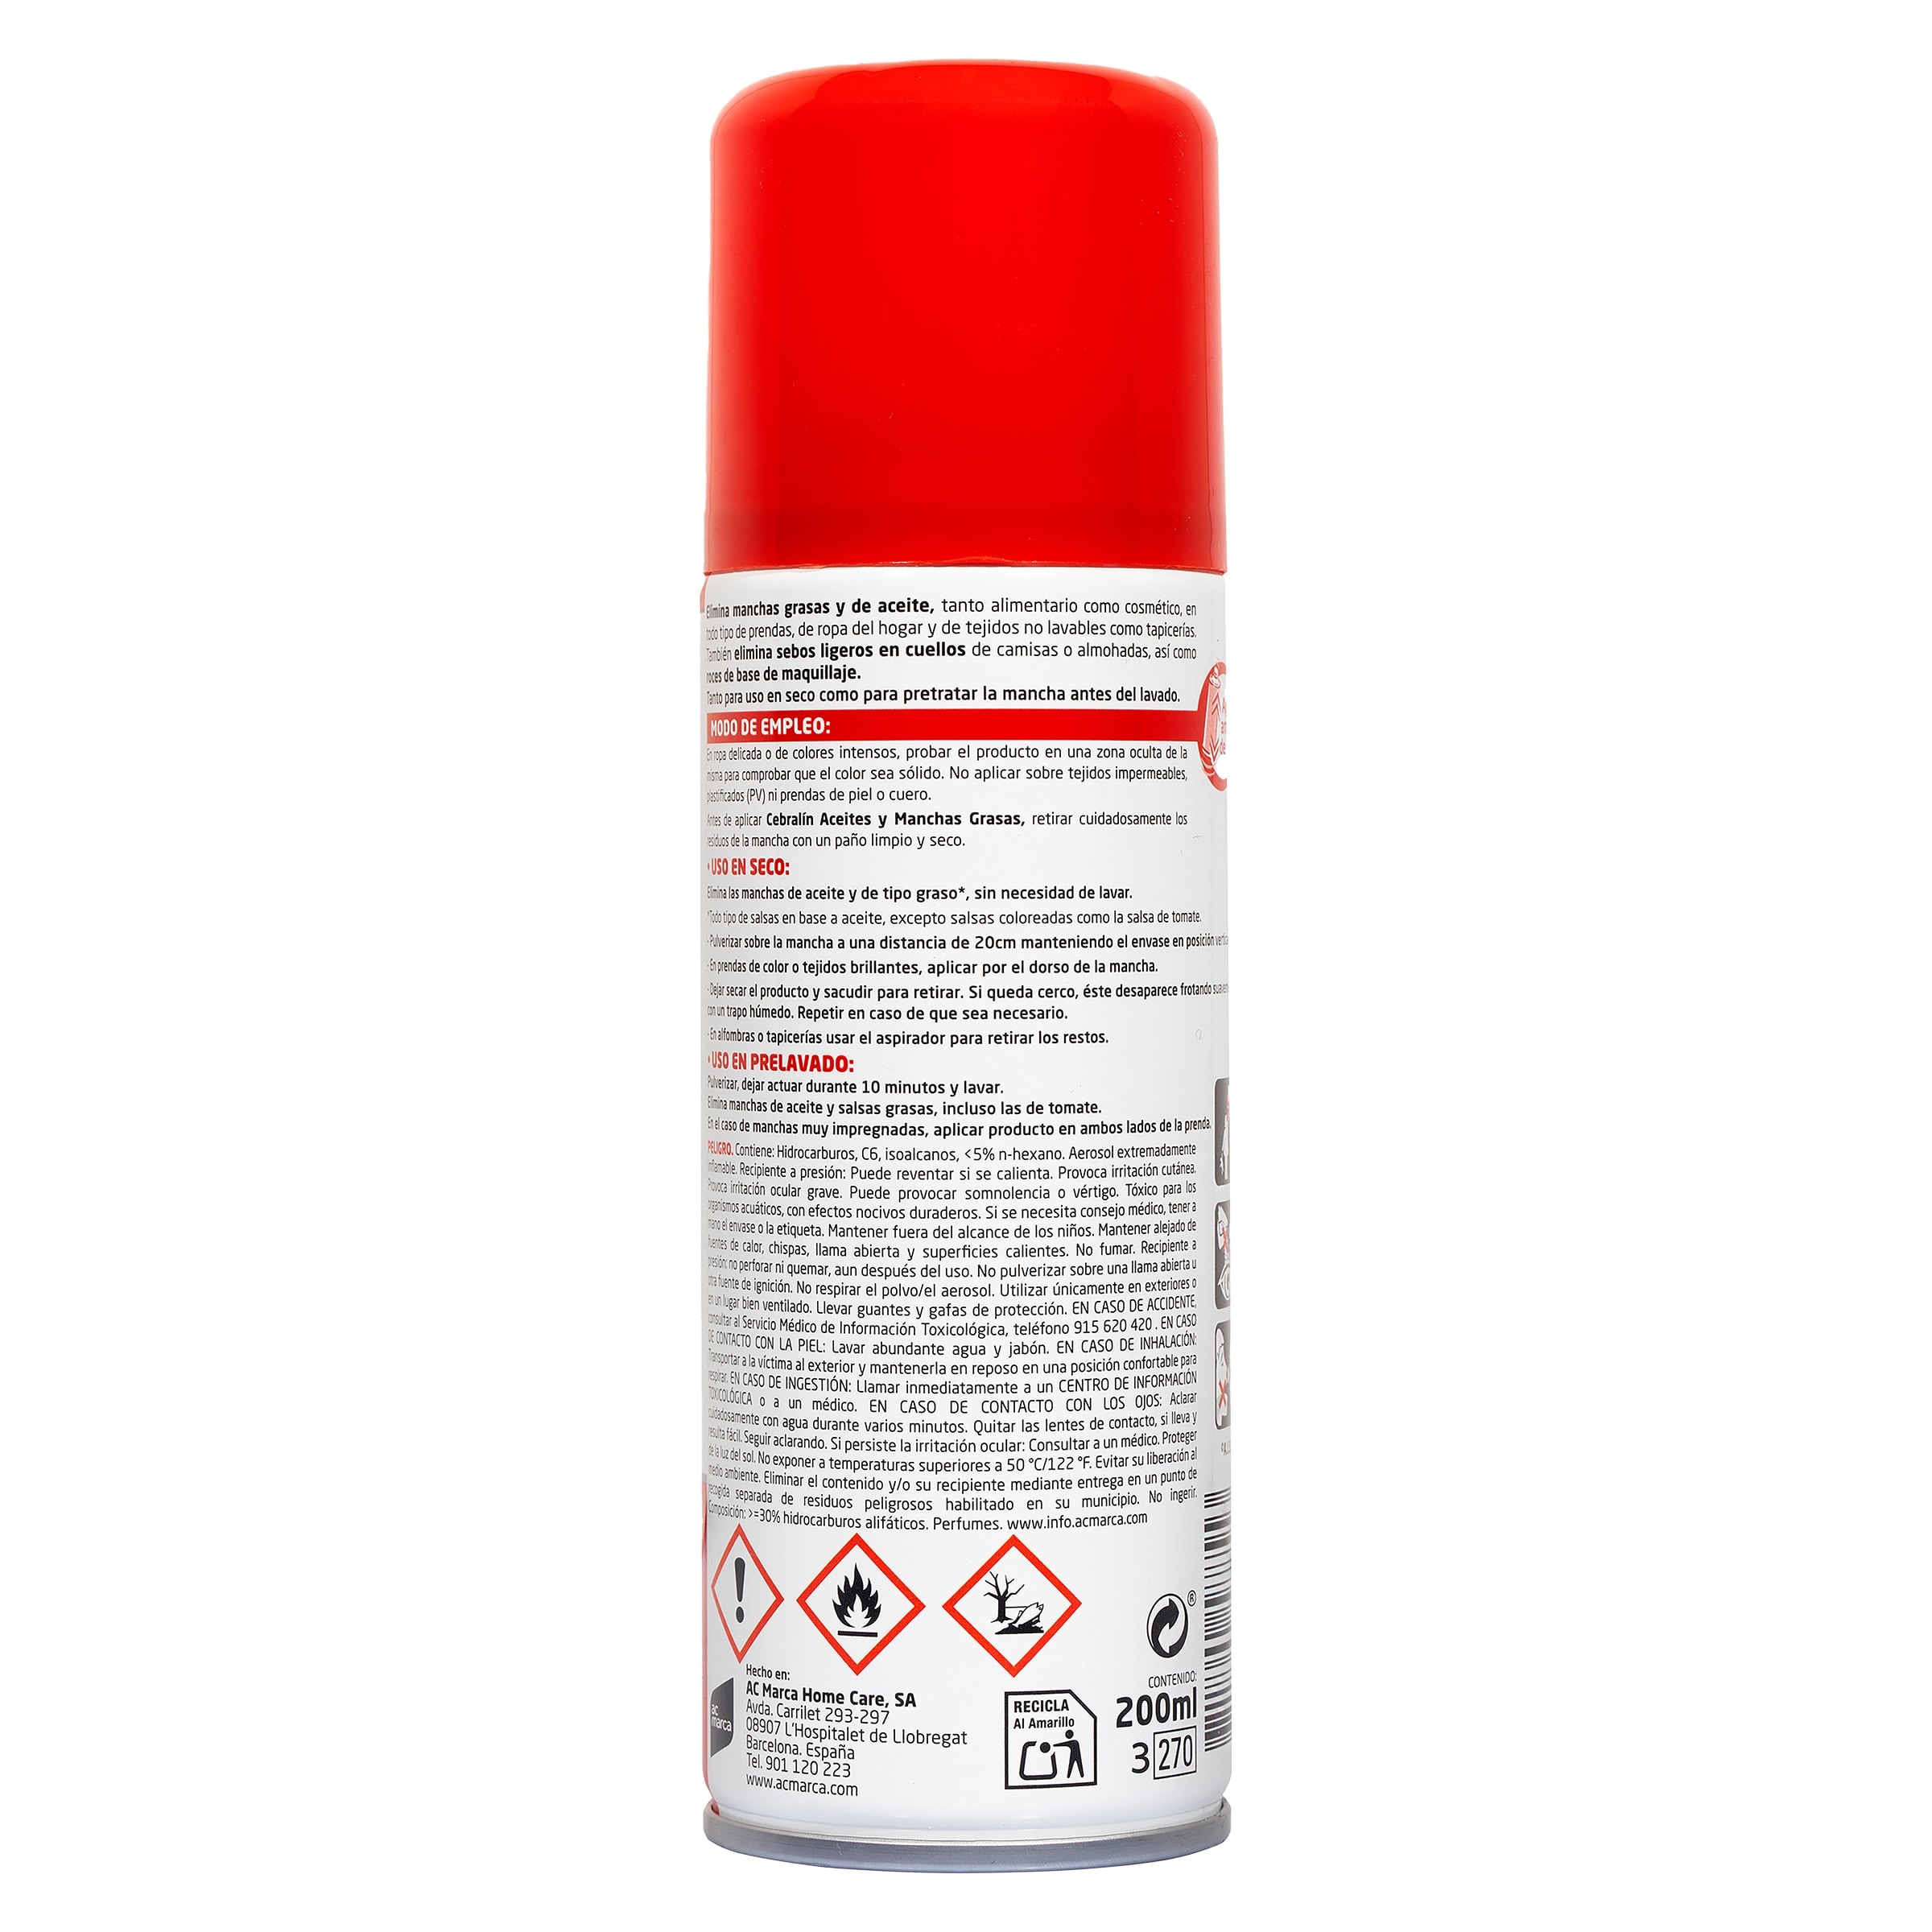 Quitamanchas experto en seco Cebralin spray 200 ml - Supermercados DIA